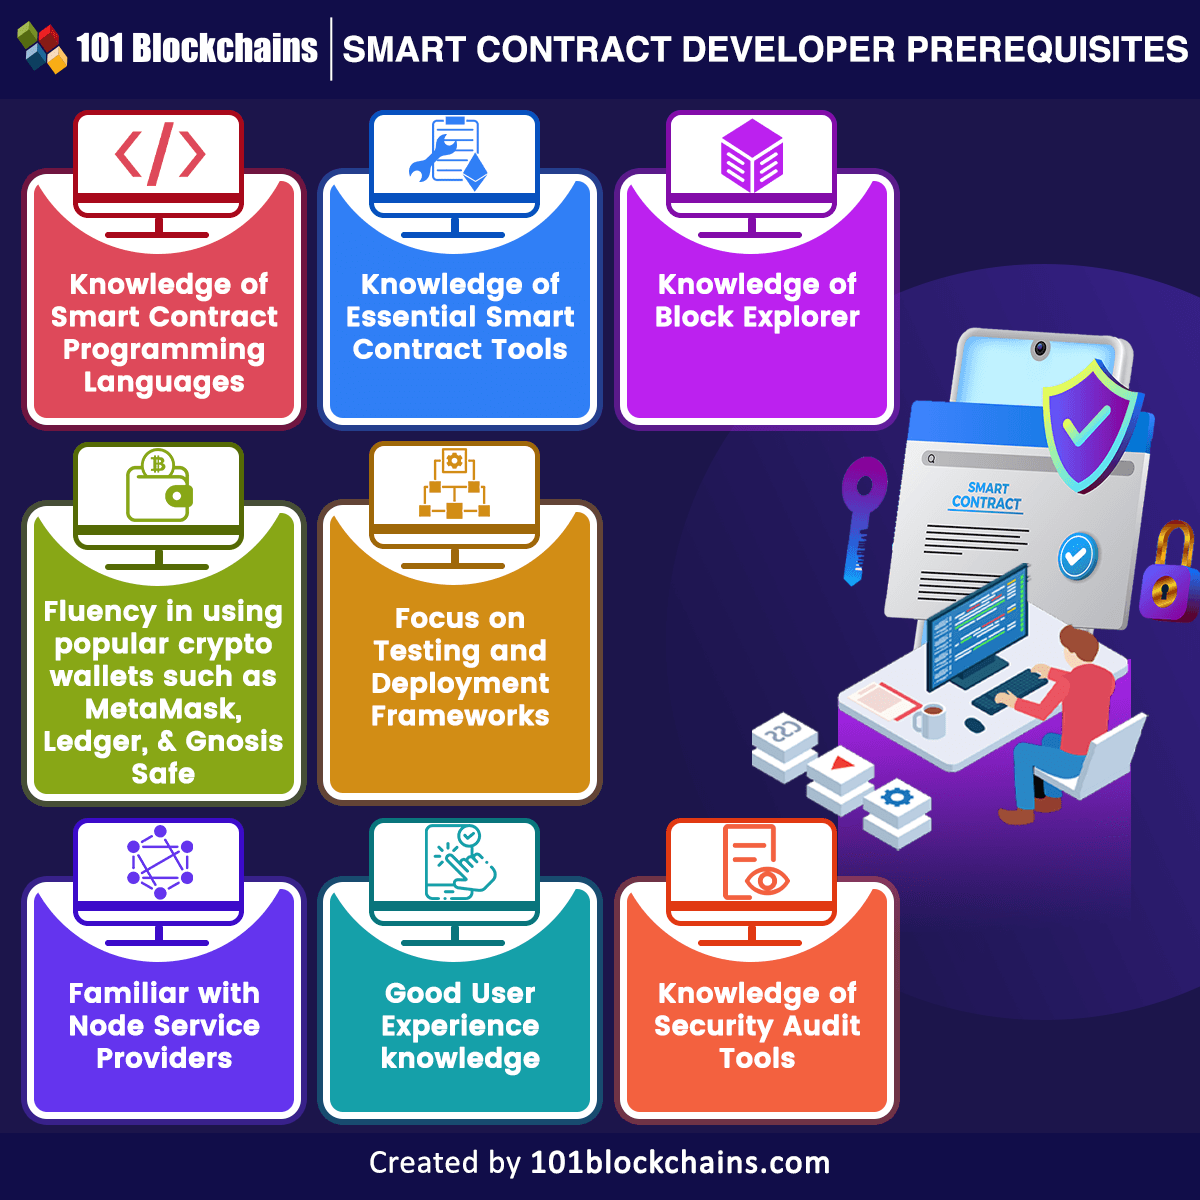 Smart Contract Developer prerequisites